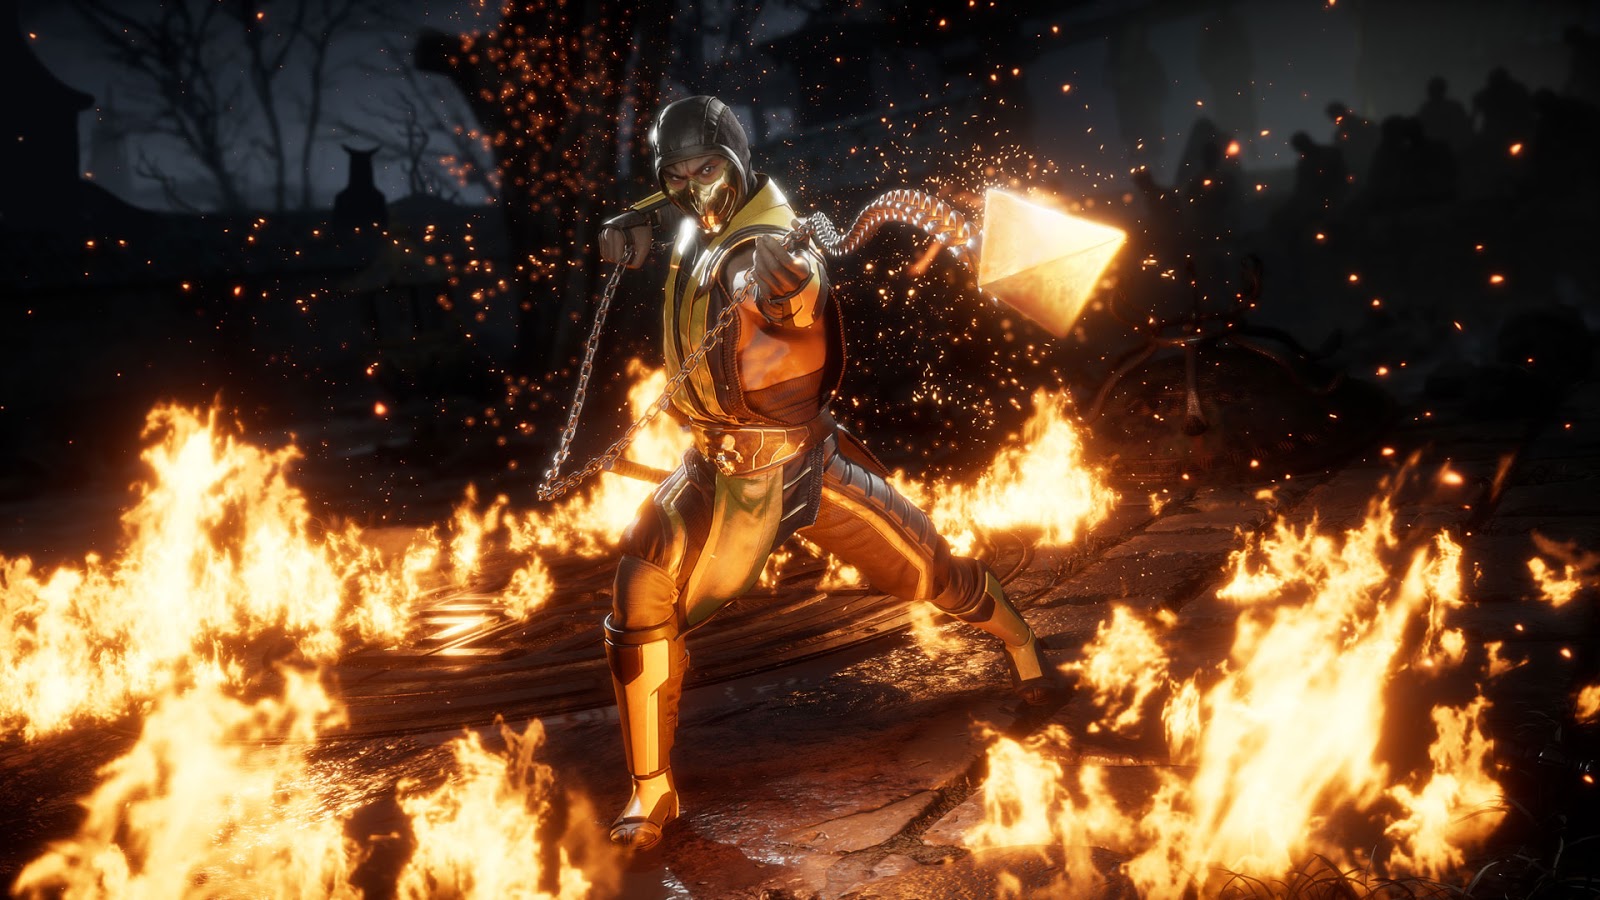 Análise: Mortal Kombat X (Multi) traz os kombates para a nova